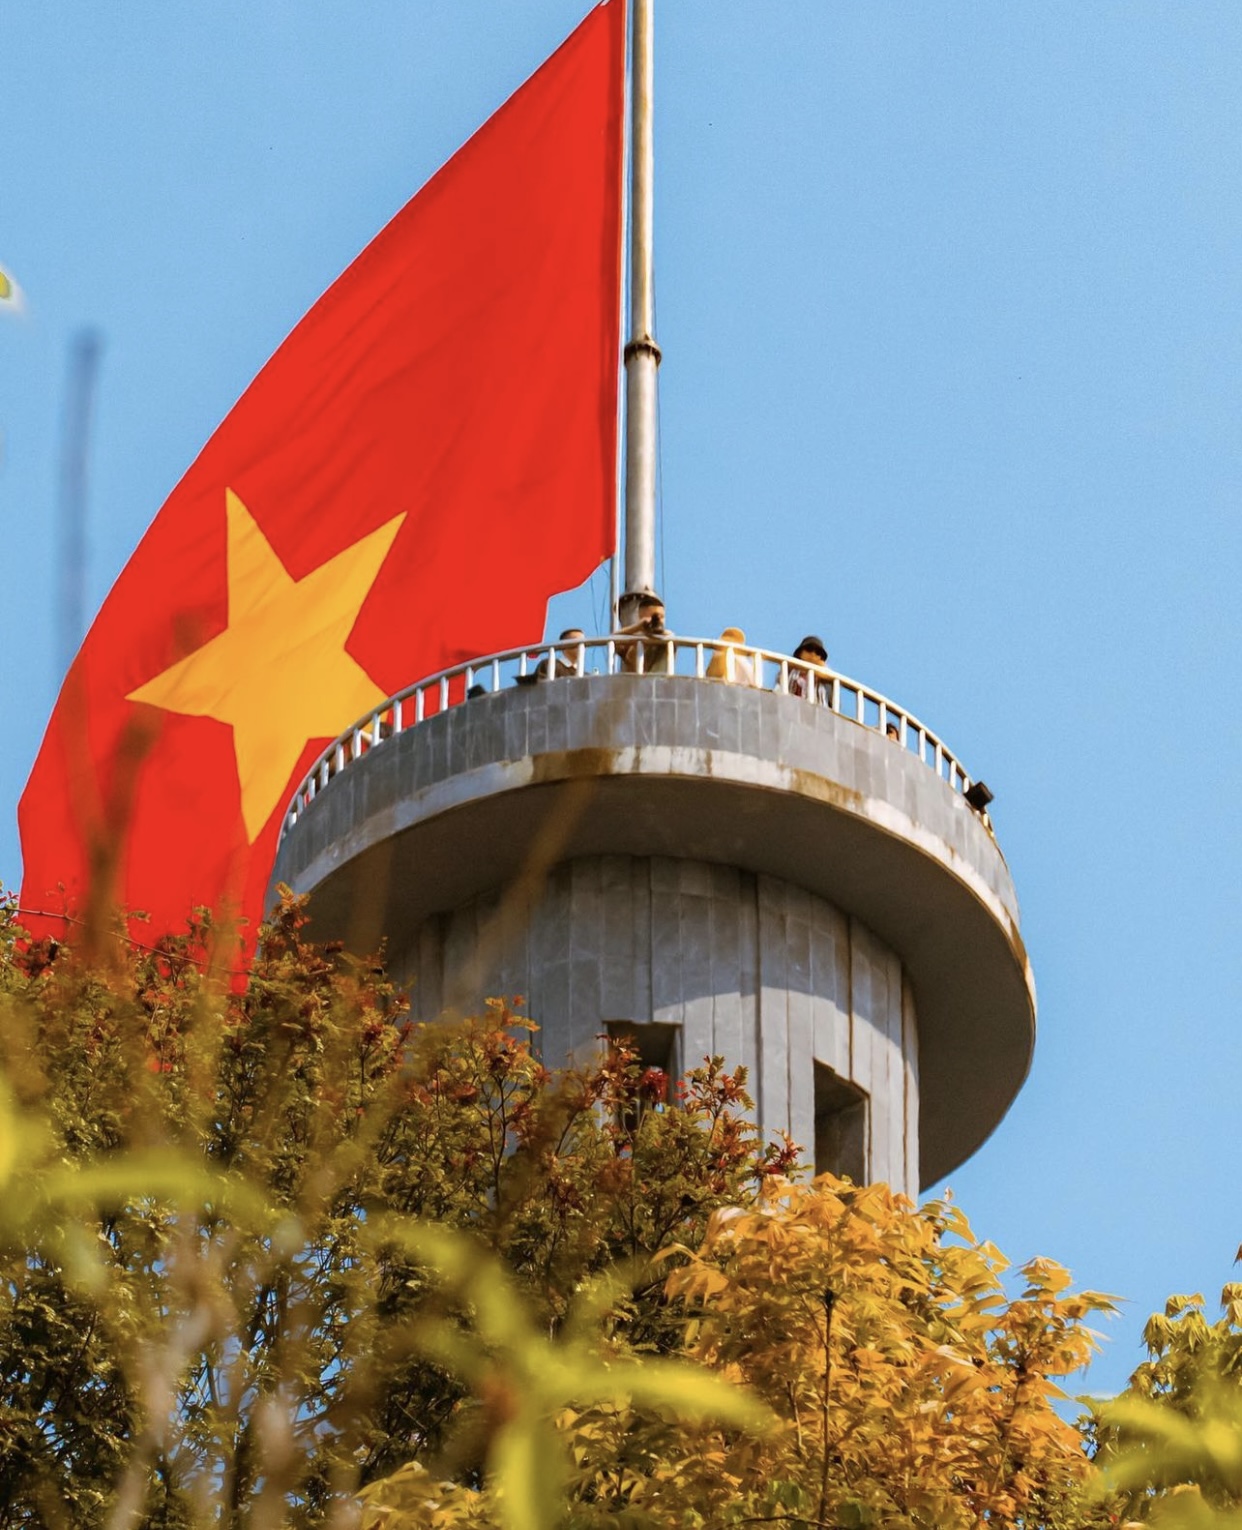 Cột cờ Lũng Cú - biểu tượng linh thiêng của người dân và quân đội Việt Nam. Hãy đến đó và chiêm ngưỡng vẻ đẹp tuyệt vời của nó. Hoặc xem hình ảnh để cảm nhận được sự trang nghiêm và uy nghi của nó.